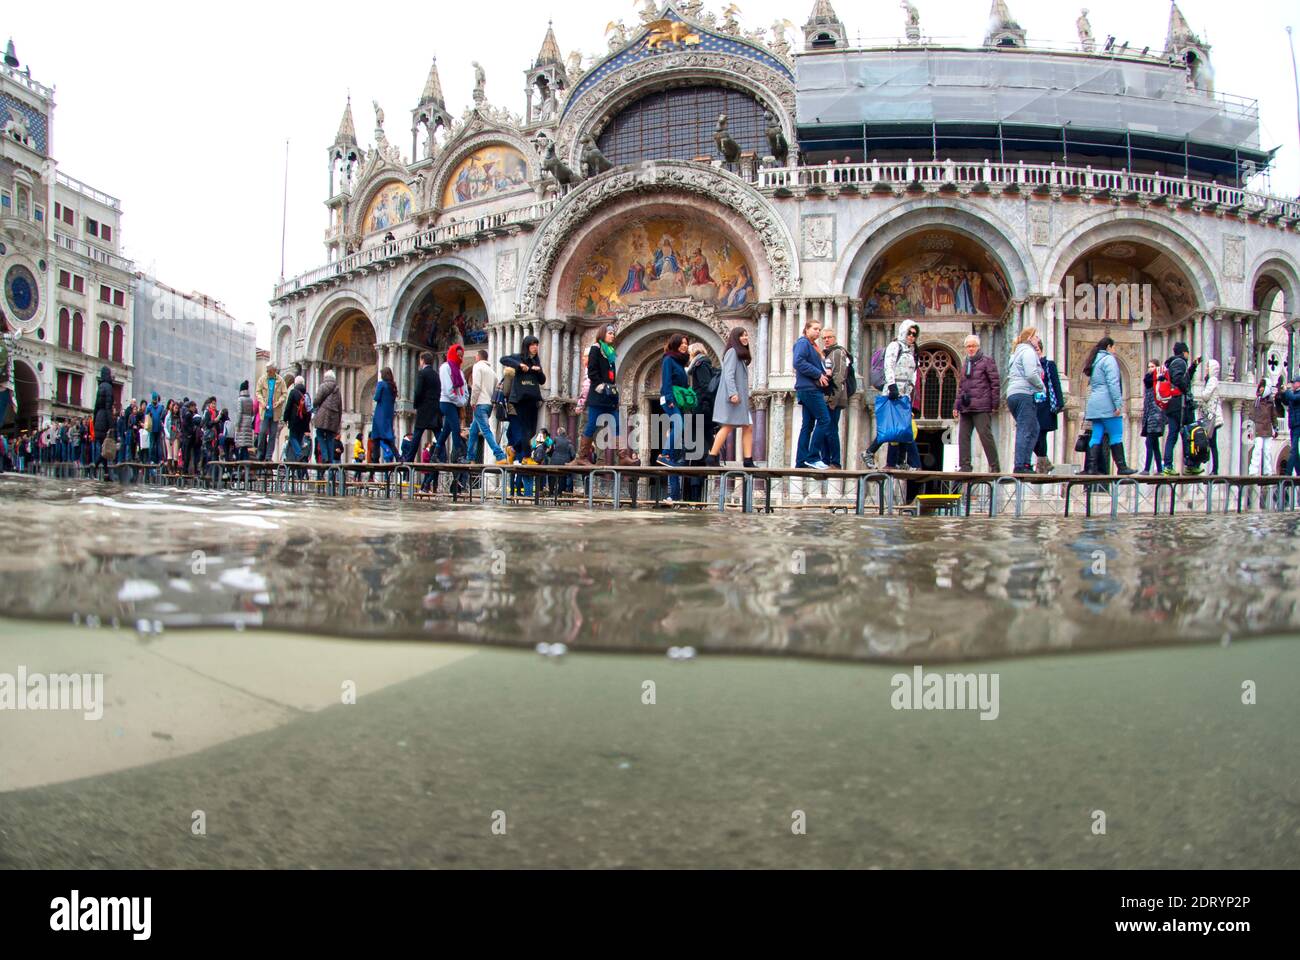 Foto submarina Plaza de San Marcos inundada por la marea alta con gente caminando. Venecia, Italia Foto de stock